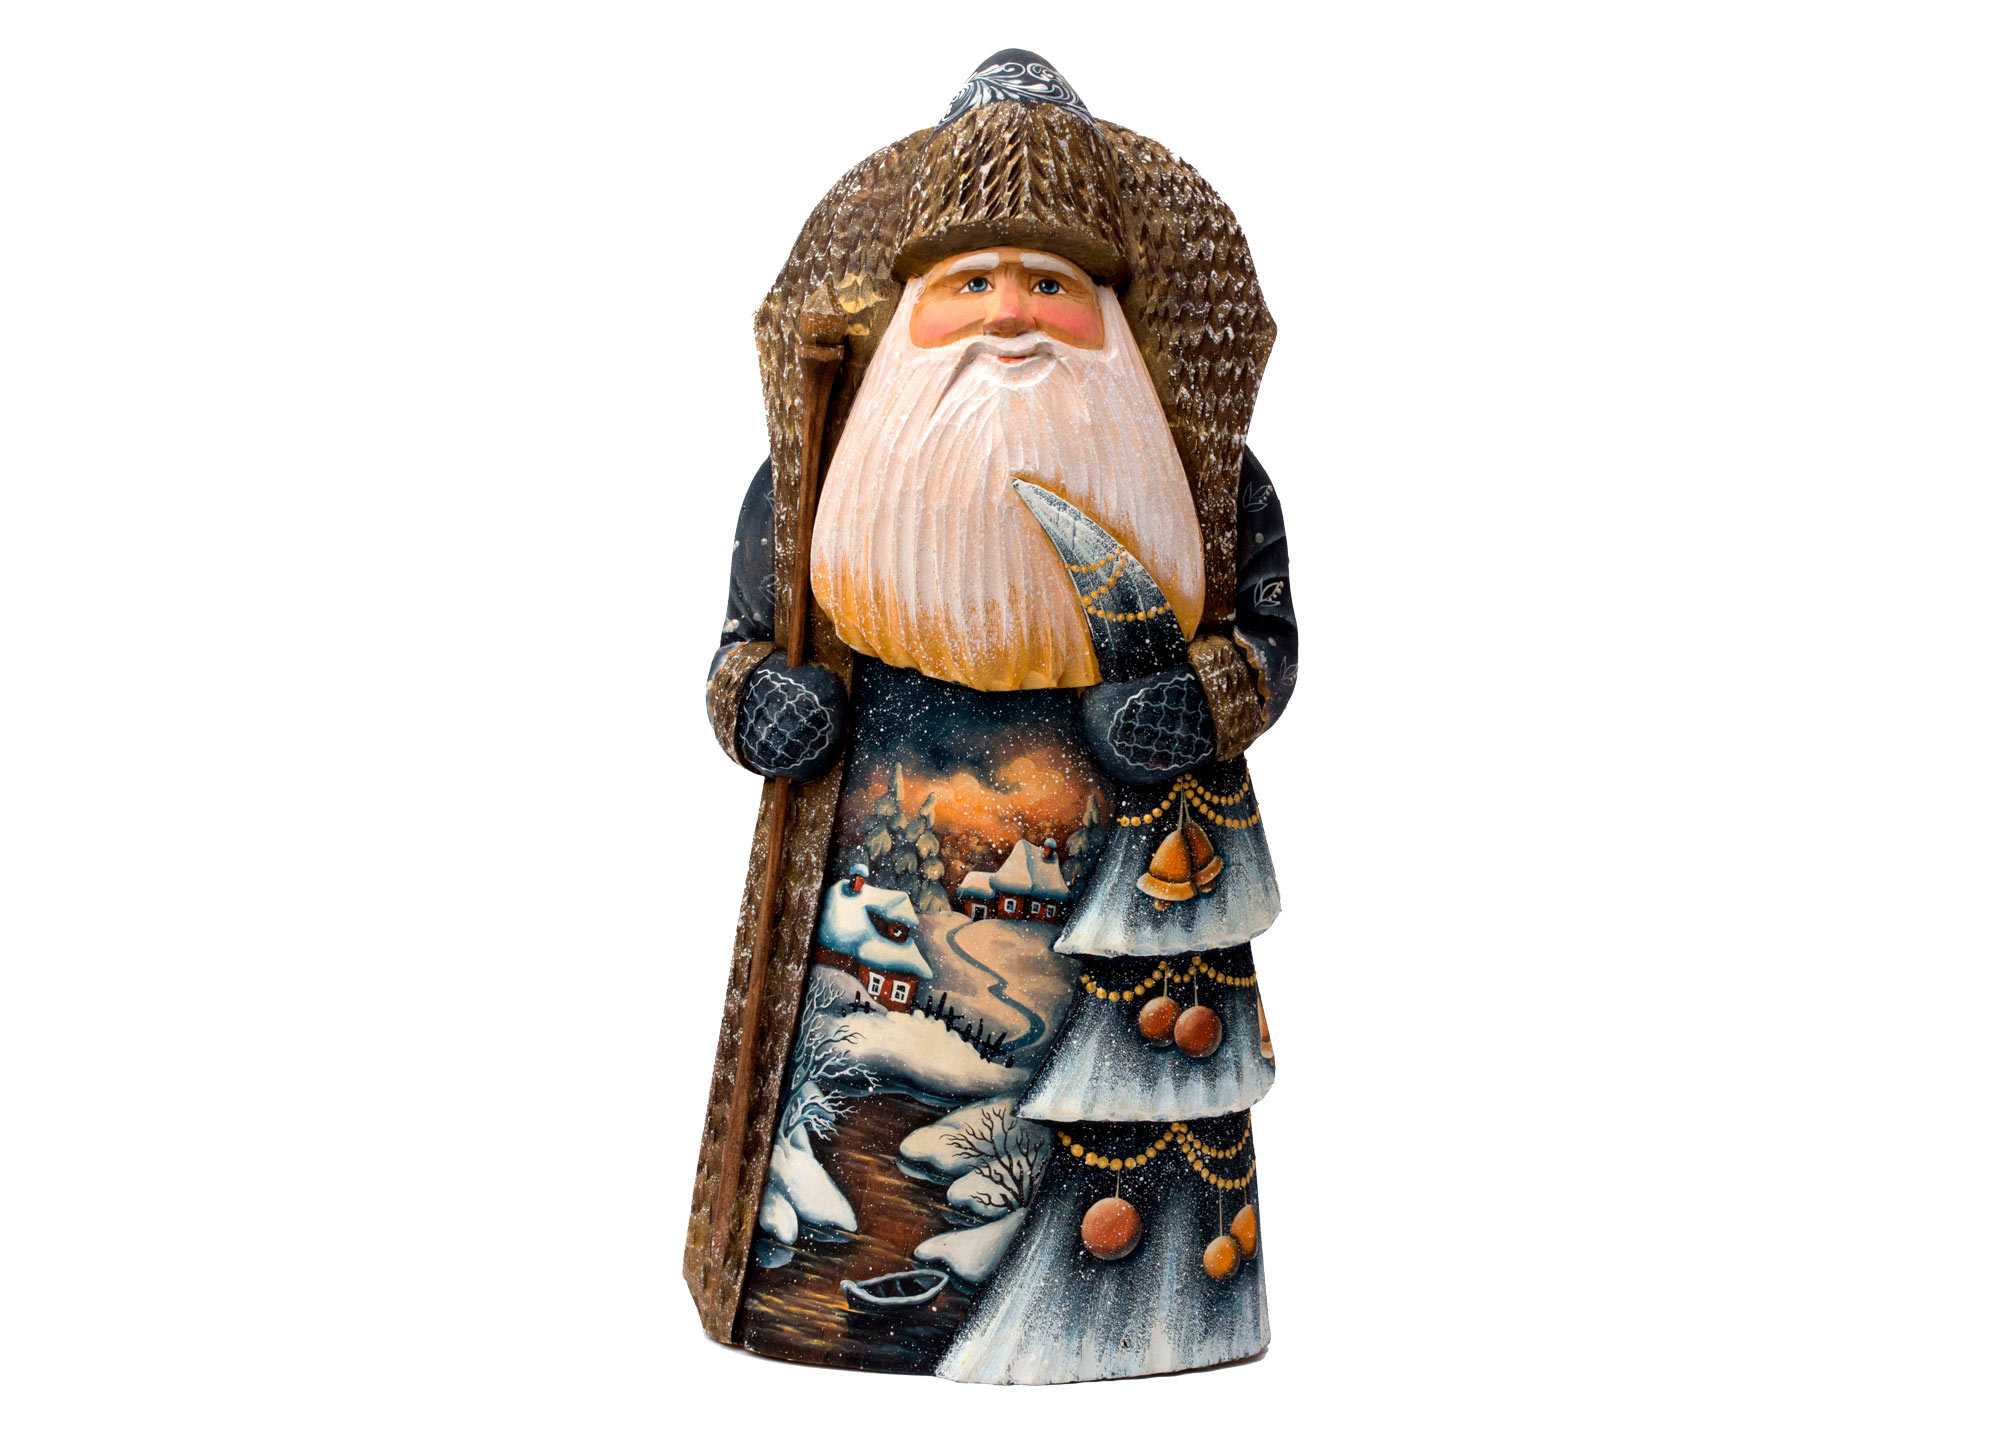 Buy Резная фигура Деда Мороза с елочкой 30 см at GoldenCockerel.com